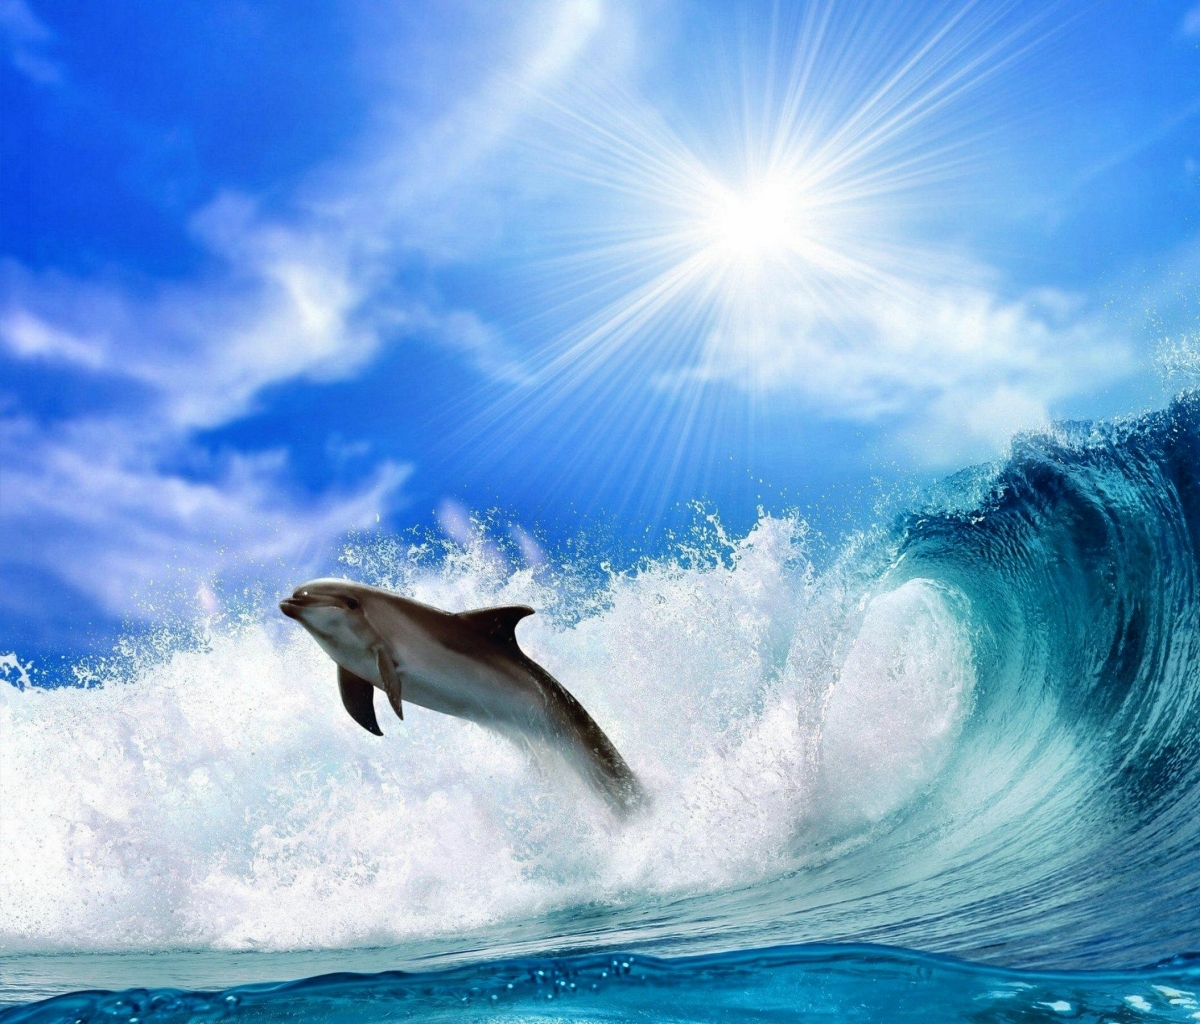 Скачать обои бесплатно Животные, Небо, Дельфин, Волна, Солнечно картинка на рабочий стол ПК